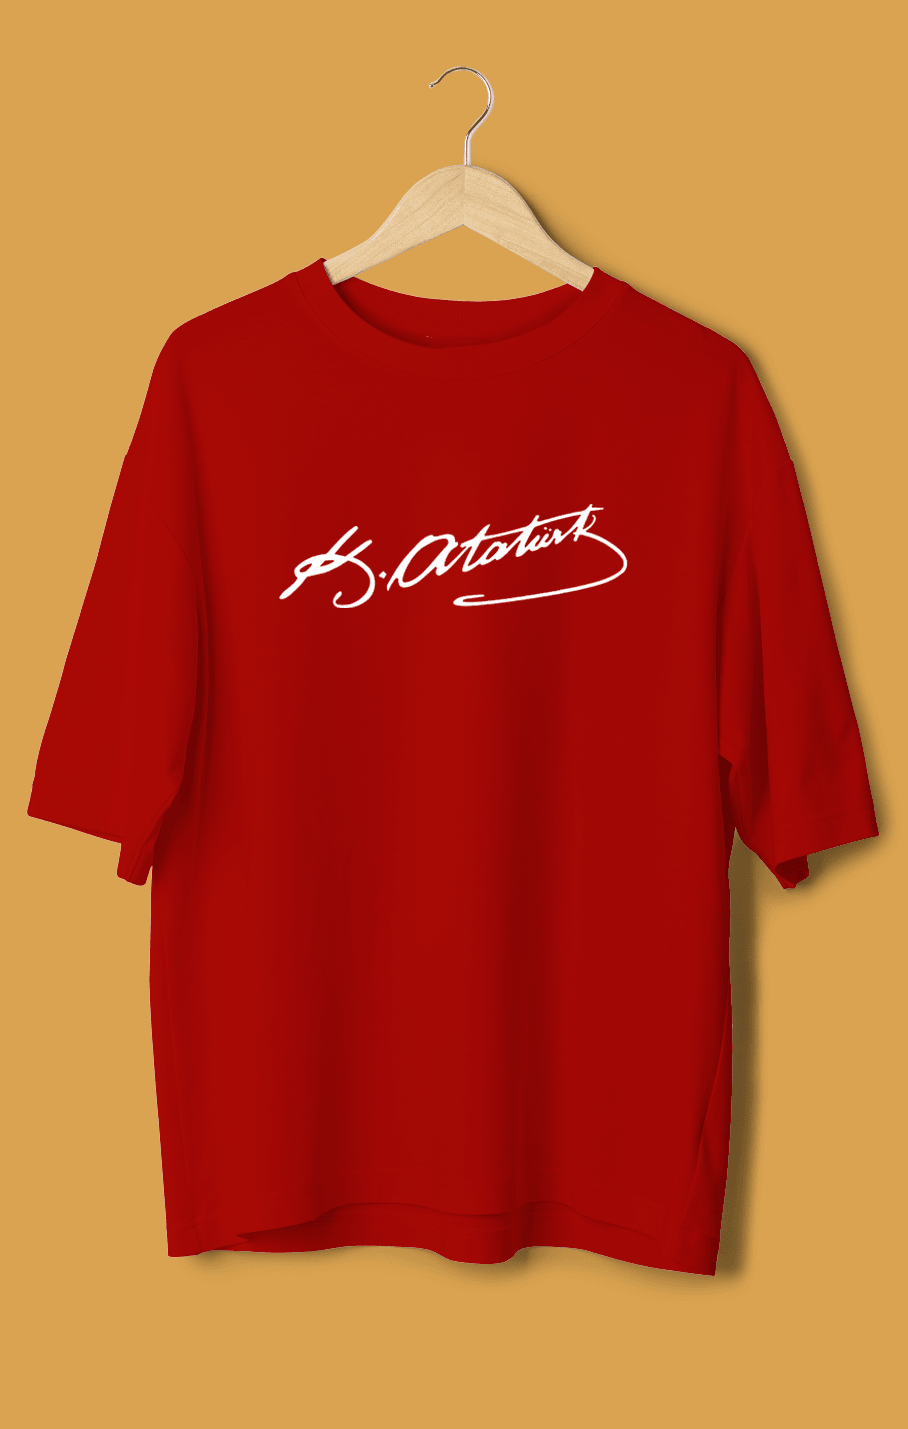 Atatürk İmzası (Orijinal Oversize Tişört)